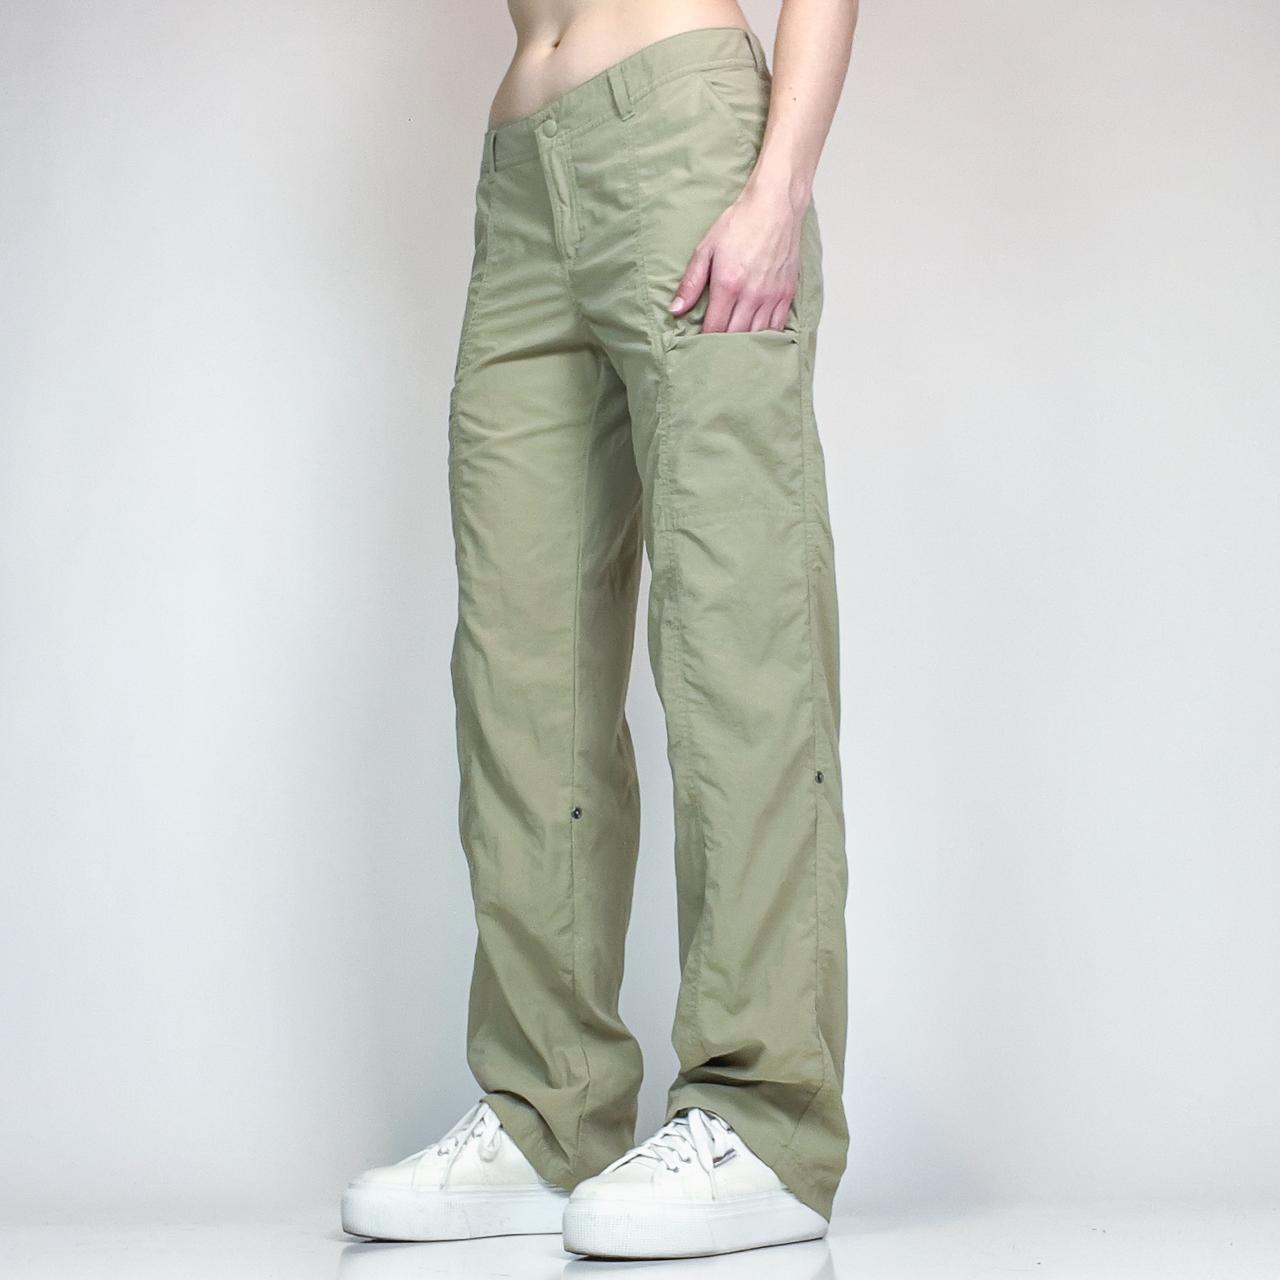 ExOfficio Women's Khaki and Tan Trousers